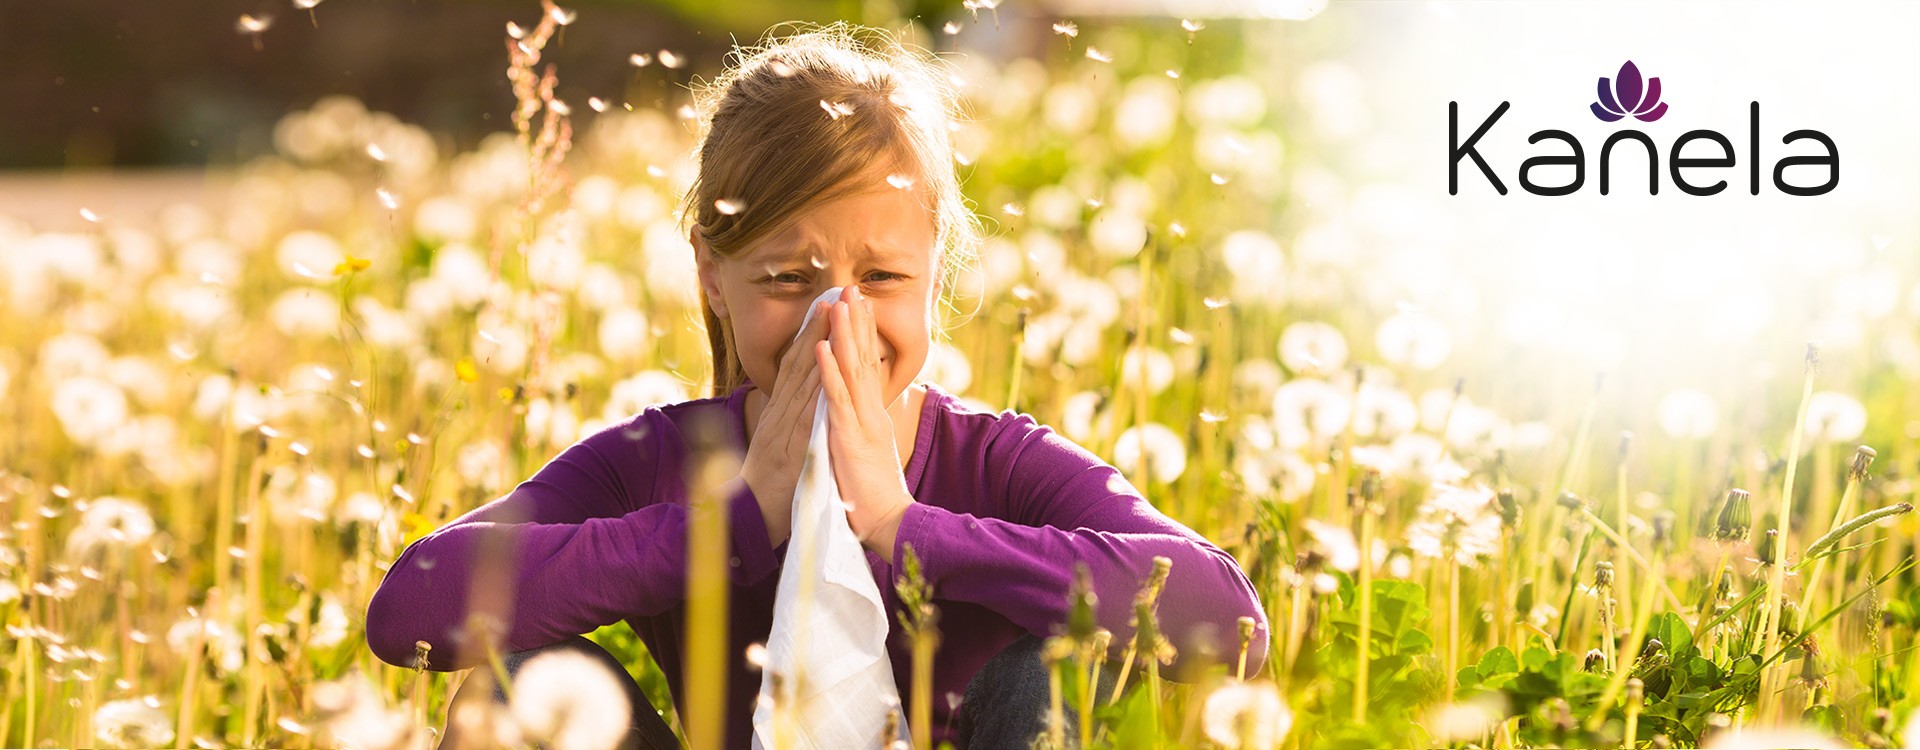 Allergie au pollen et rhume des foins - qu'est-ce qui aide?